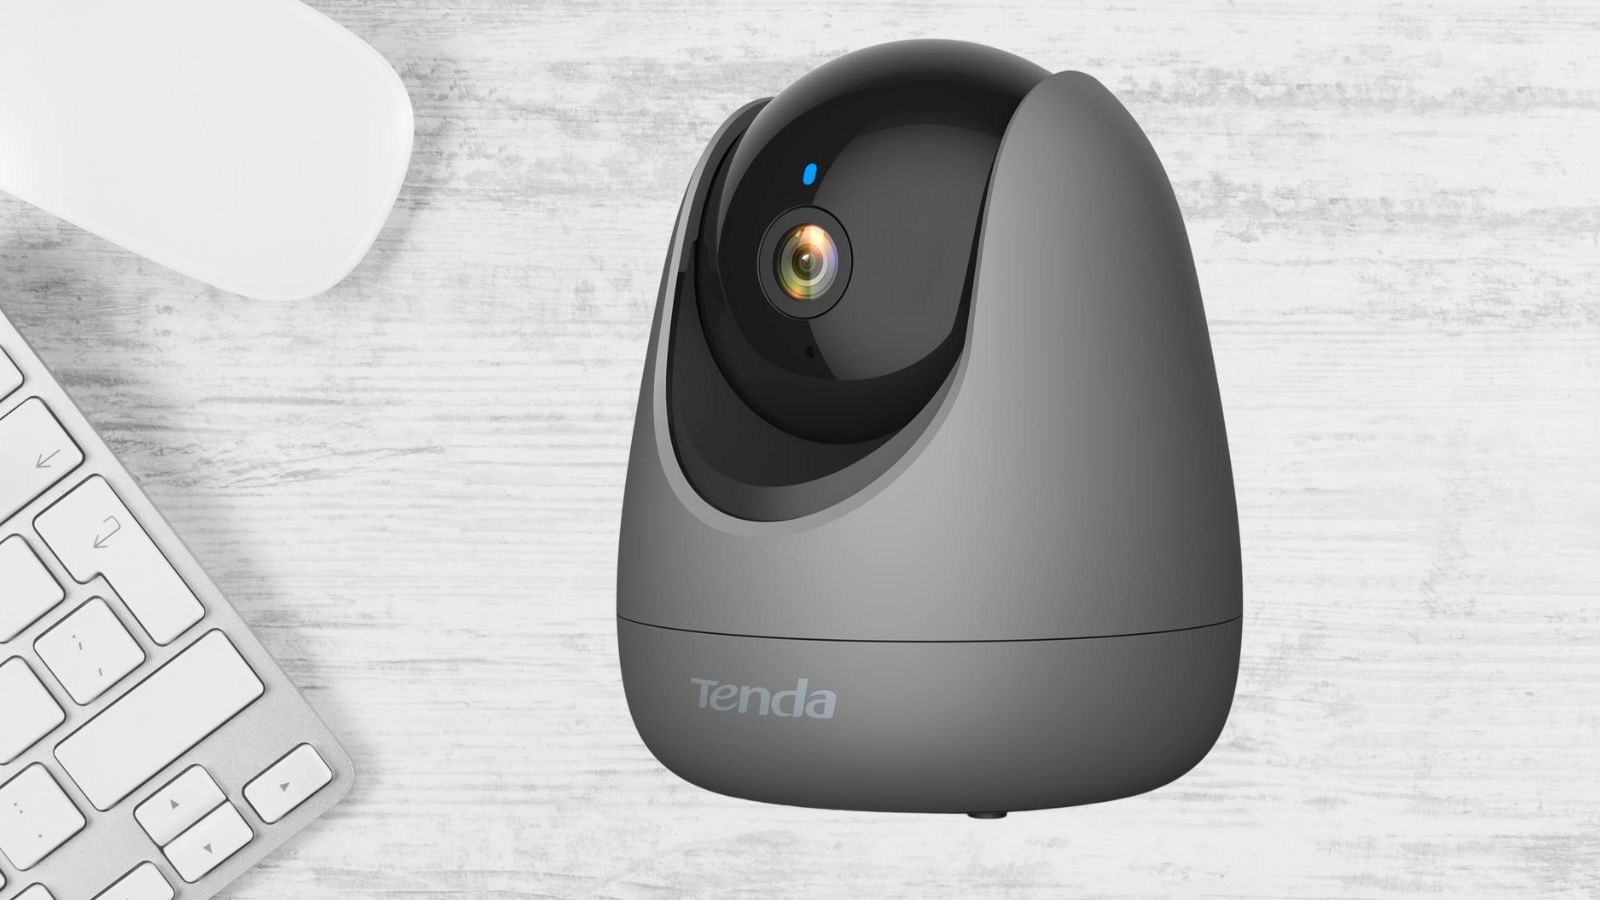 Videocamera da interno 1080p a 20€: offerta Tenda FOLLE su Amazon